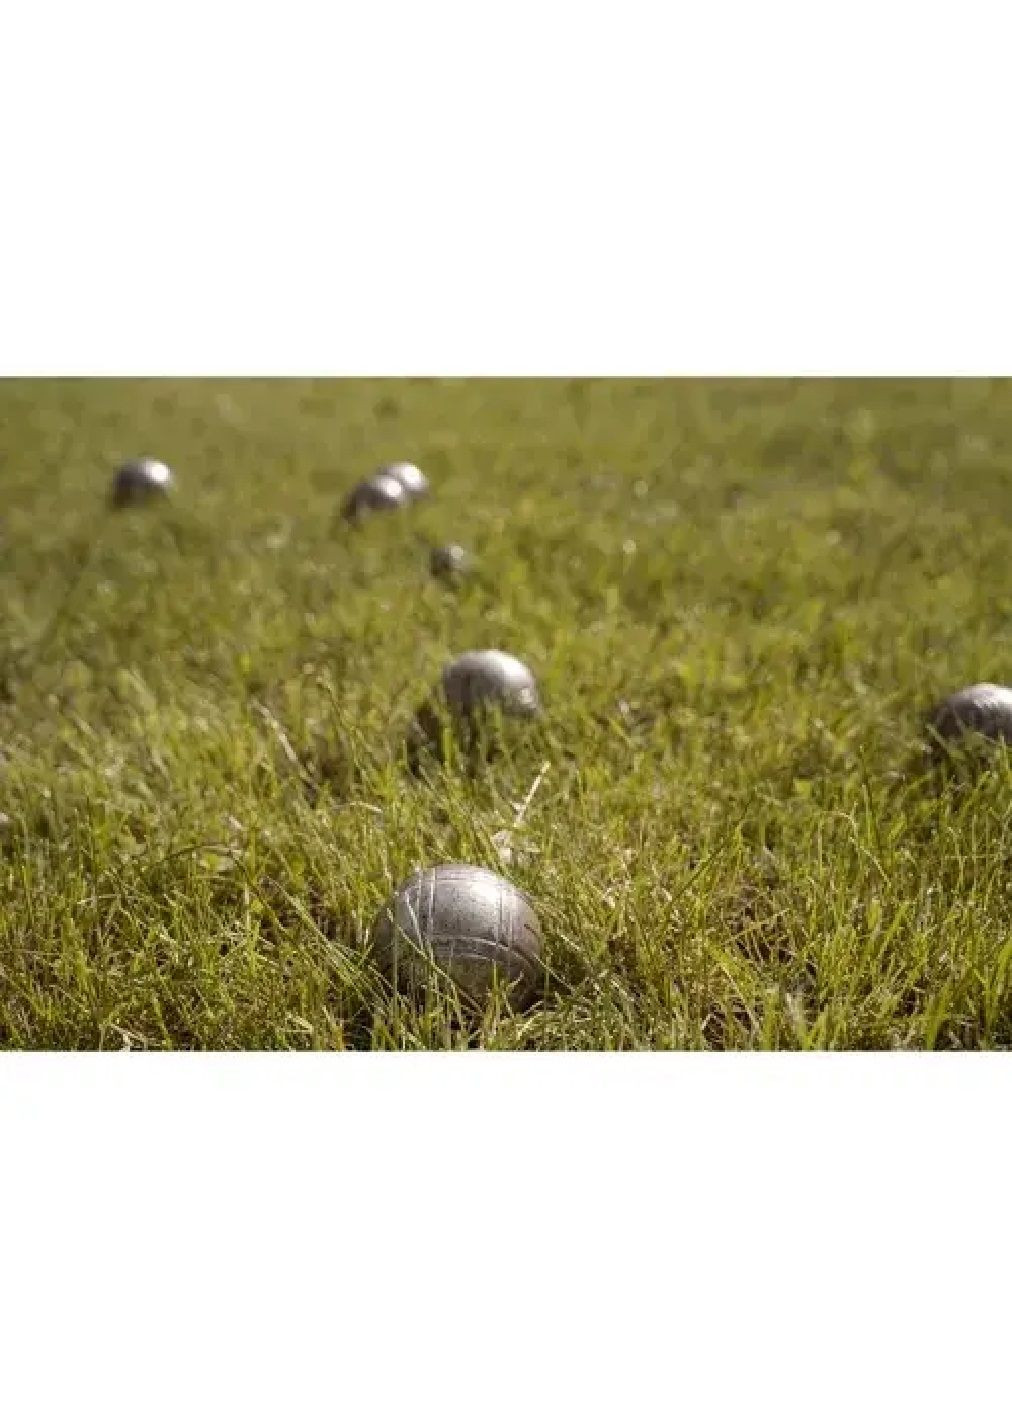 Комплект набор металлических мячей шаров с деревянным шариком веревкой в чехле для игры в петанк бочче 6 шт (477115-Prob) Unbranded (294654856)